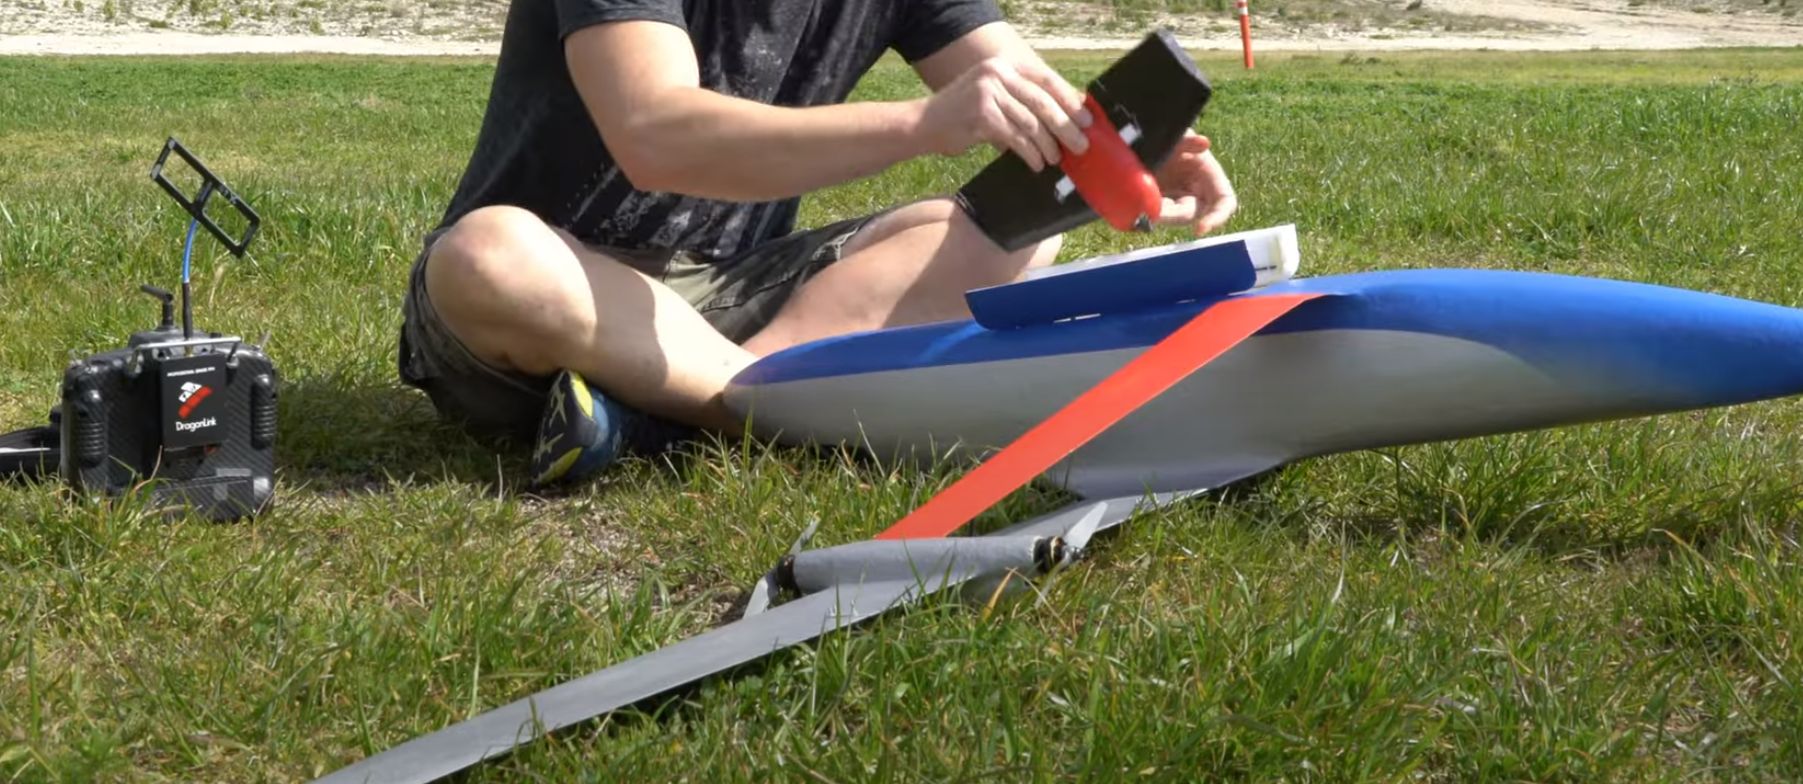 بناء نموذج لطائرة ذات دعامة تروس: هل هو شعور أم هراء؟